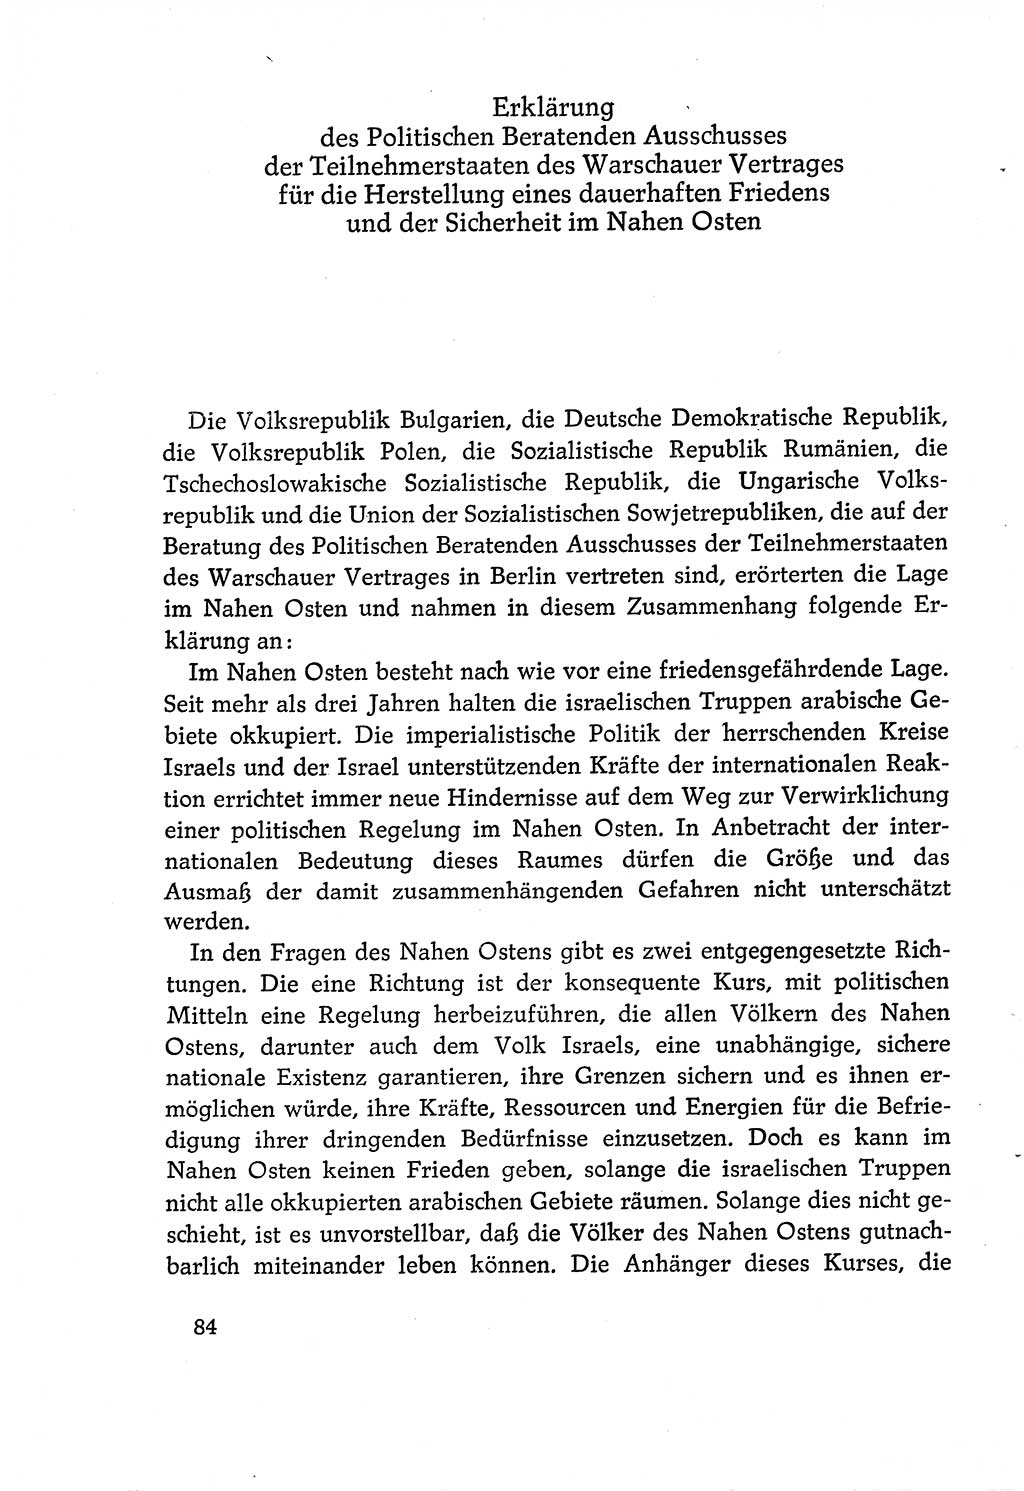 Dokumente der Sozialistischen Einheitspartei Deutschlands (SED) [Deutsche Demokratische Republik (DDR)] 1970-1971, Seite 84 (Dok. SED DDR 1970-1971, S. 84)